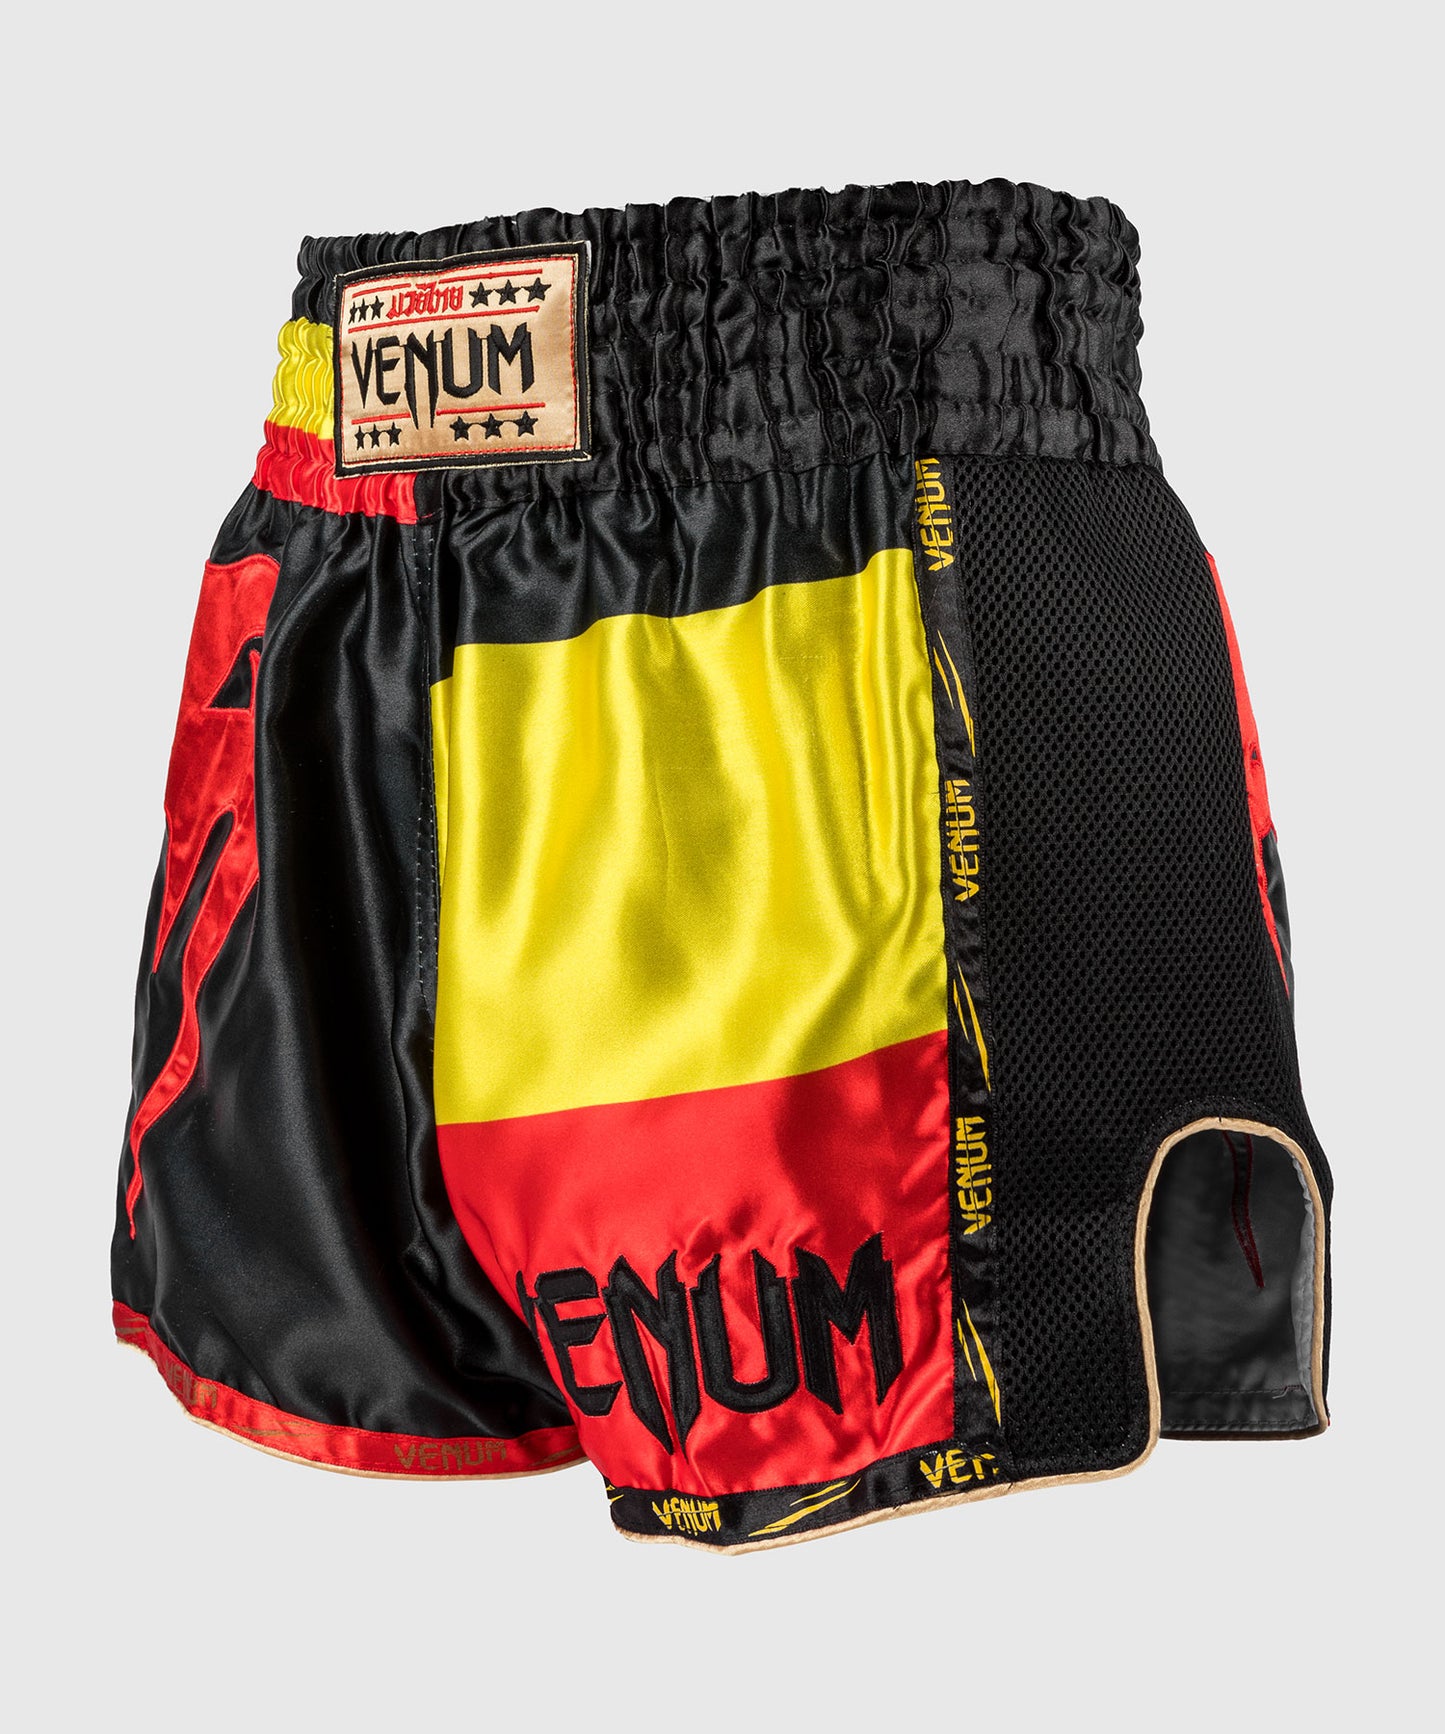 Pantalón corto Venum Giant Muay Thai - Negro/Amarillo/Rojo